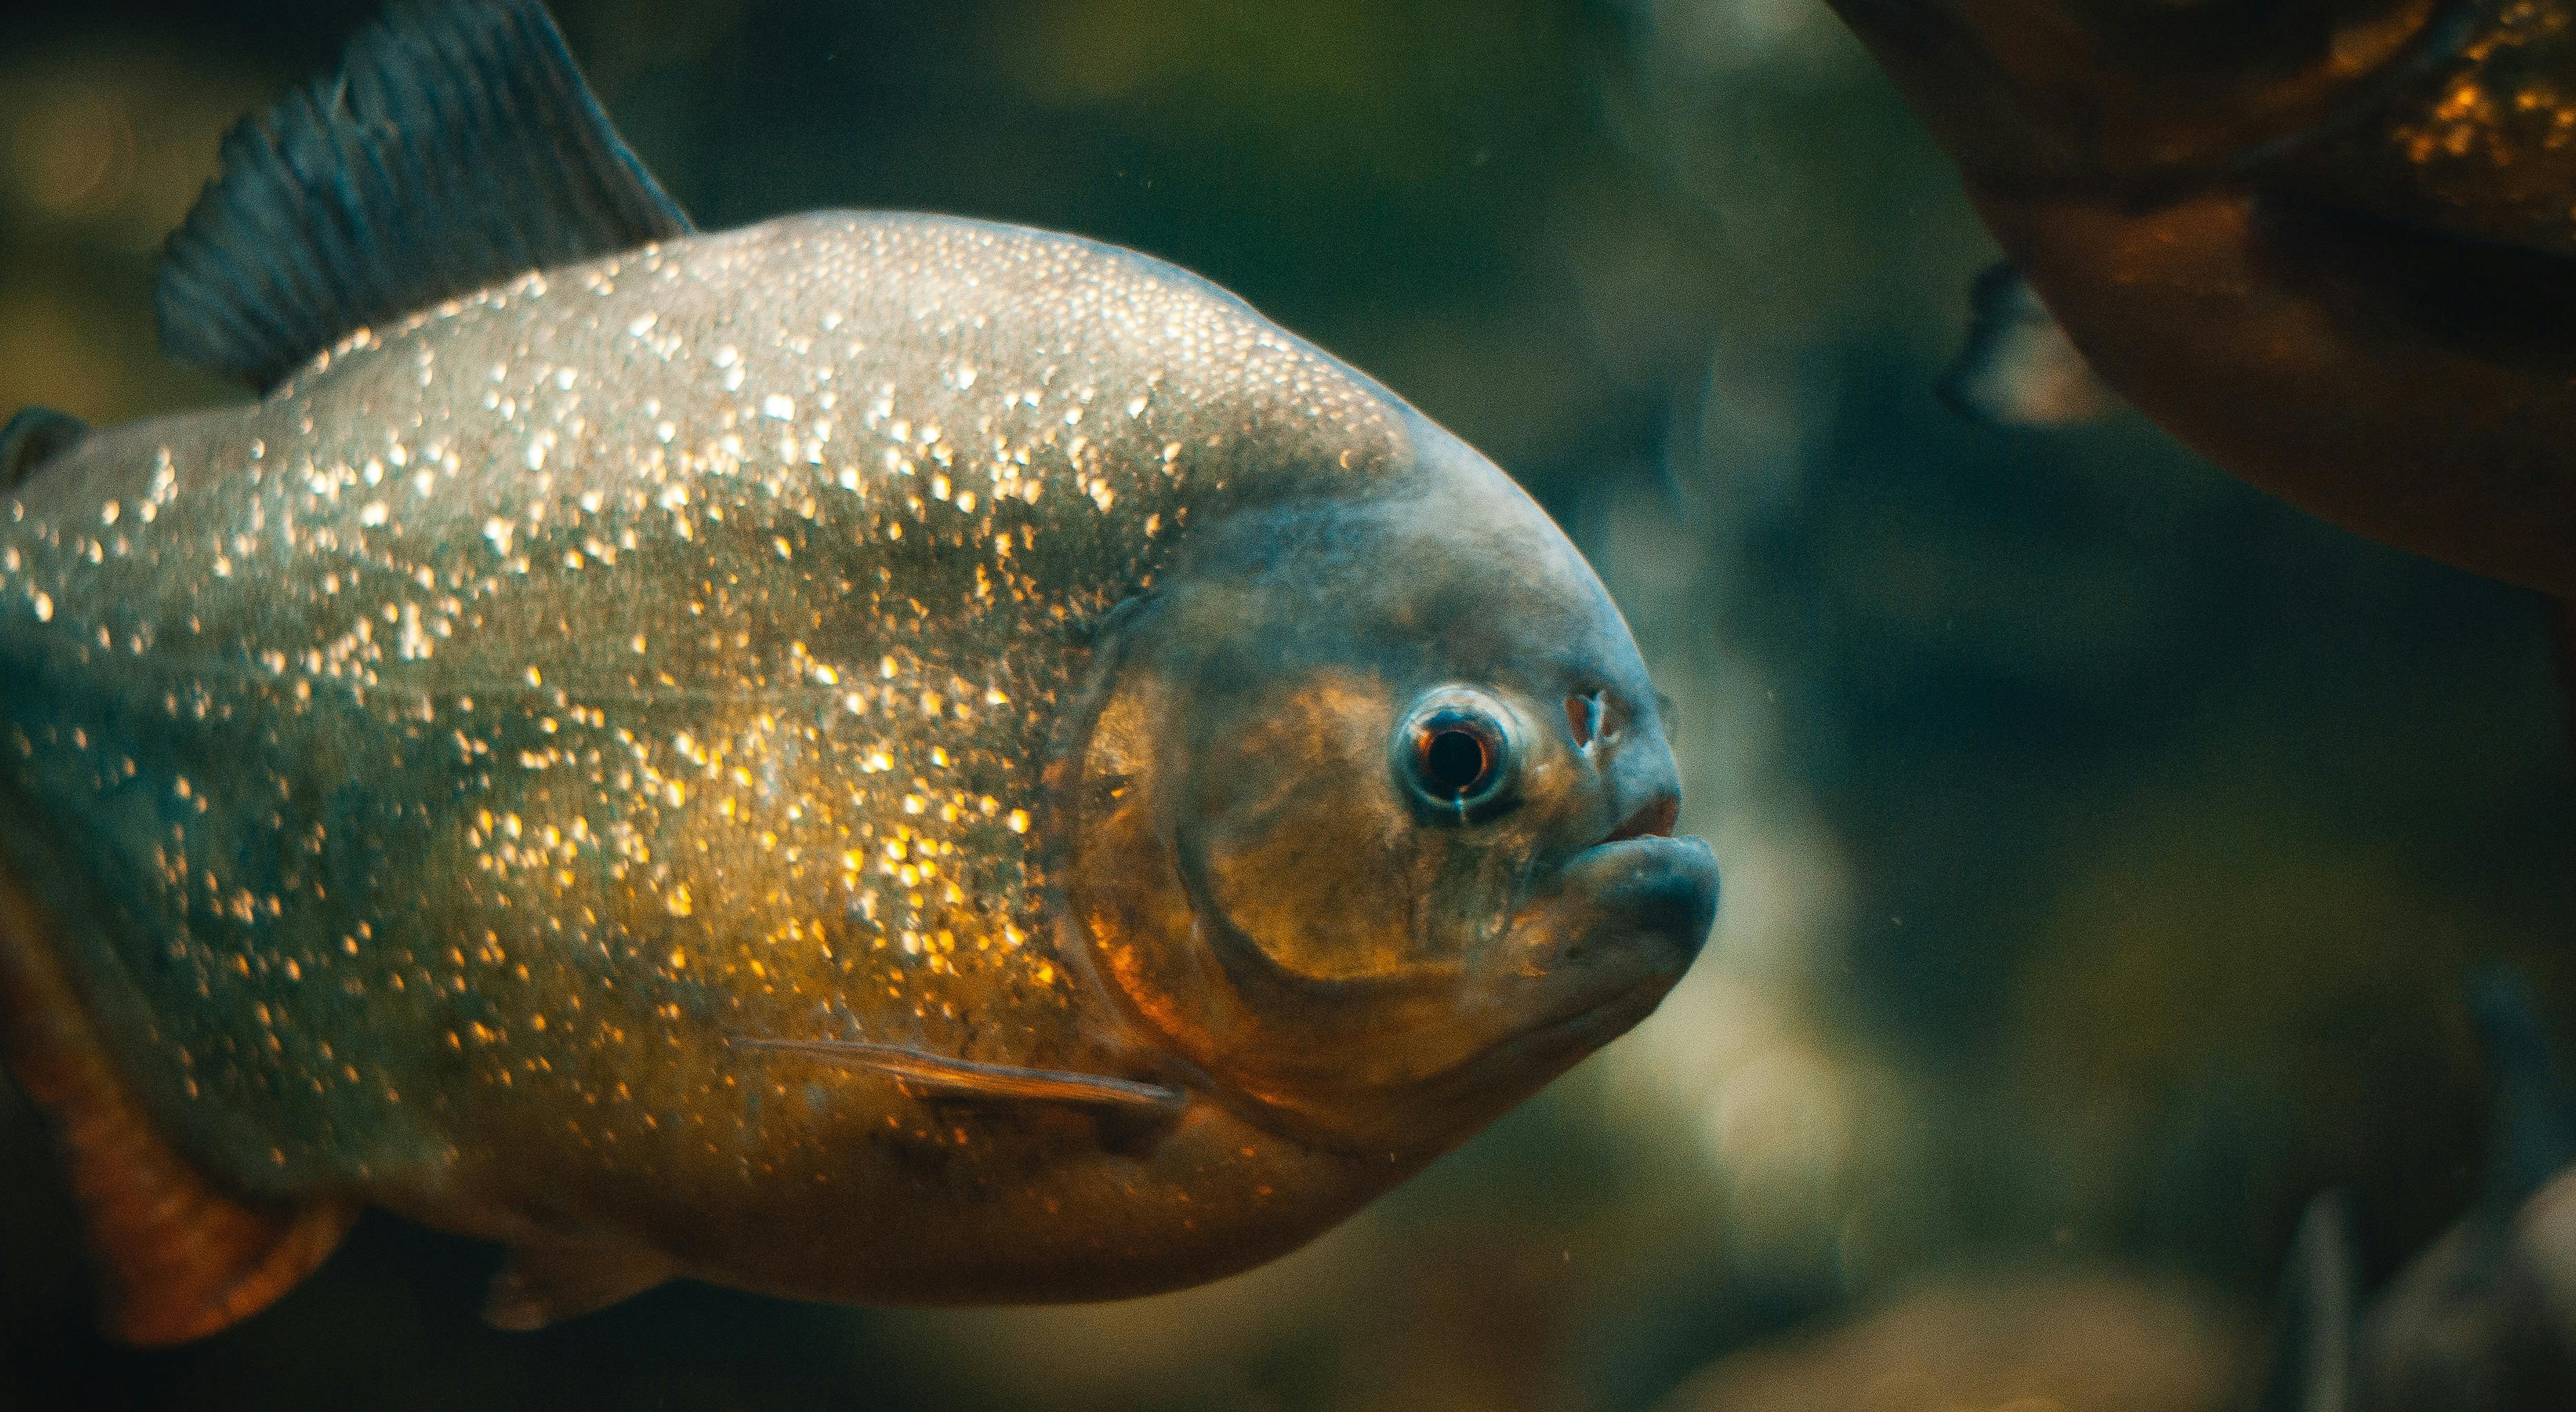 close up shot of red bellied piranha underwater